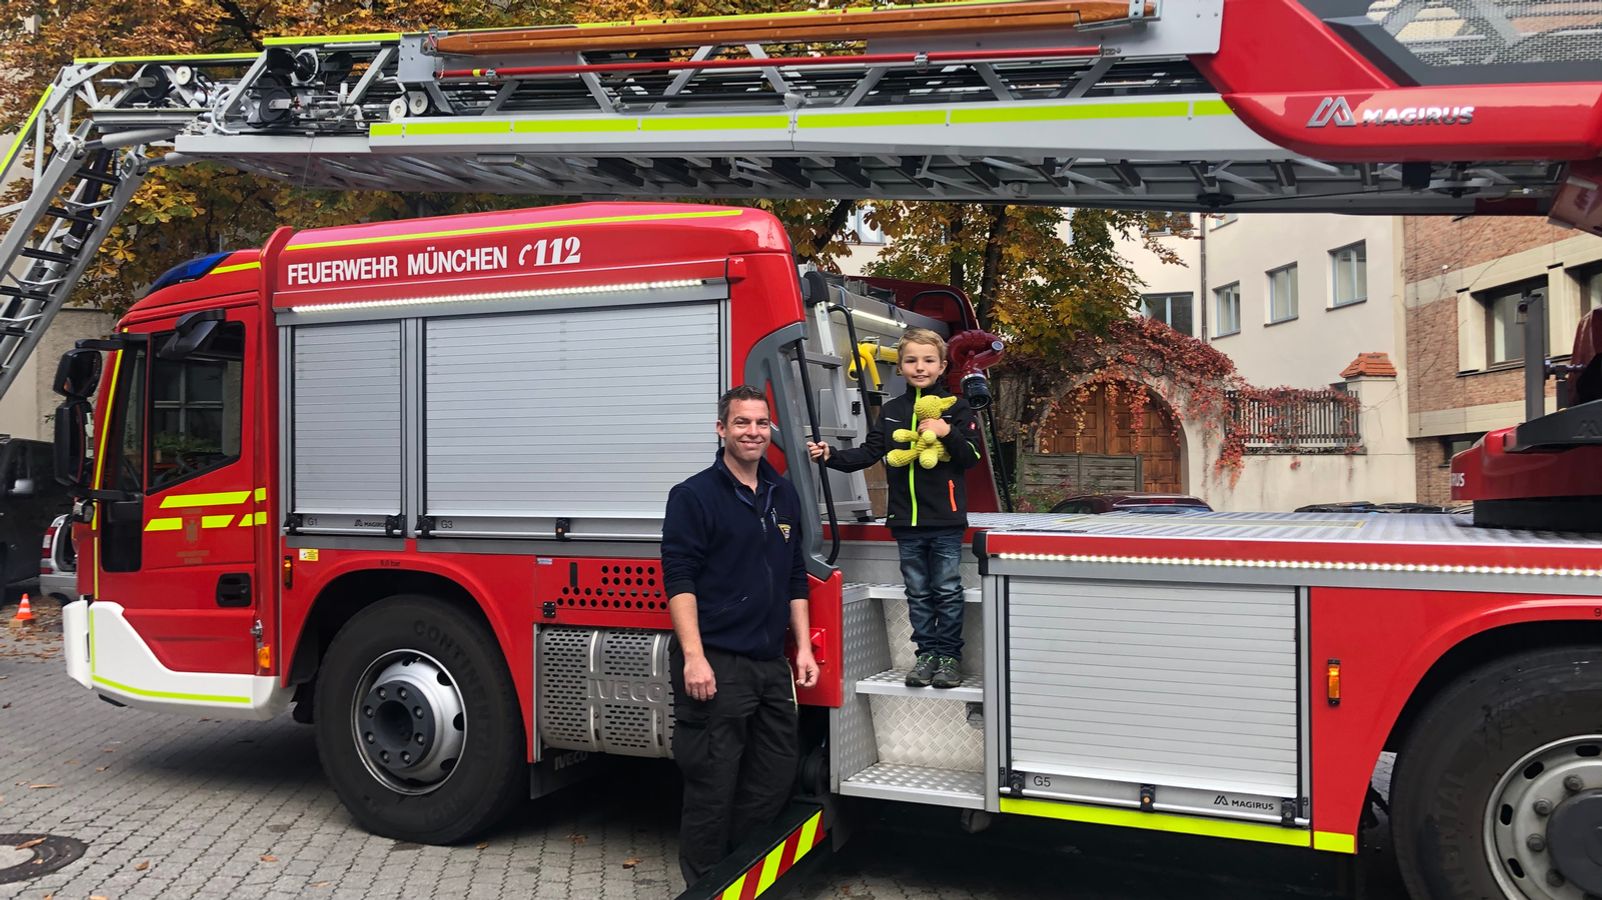 Μόναχο: Ο Ηλίας εκτελεί δοκιμαστική υπηρεσία στην πυροσβεστική 2